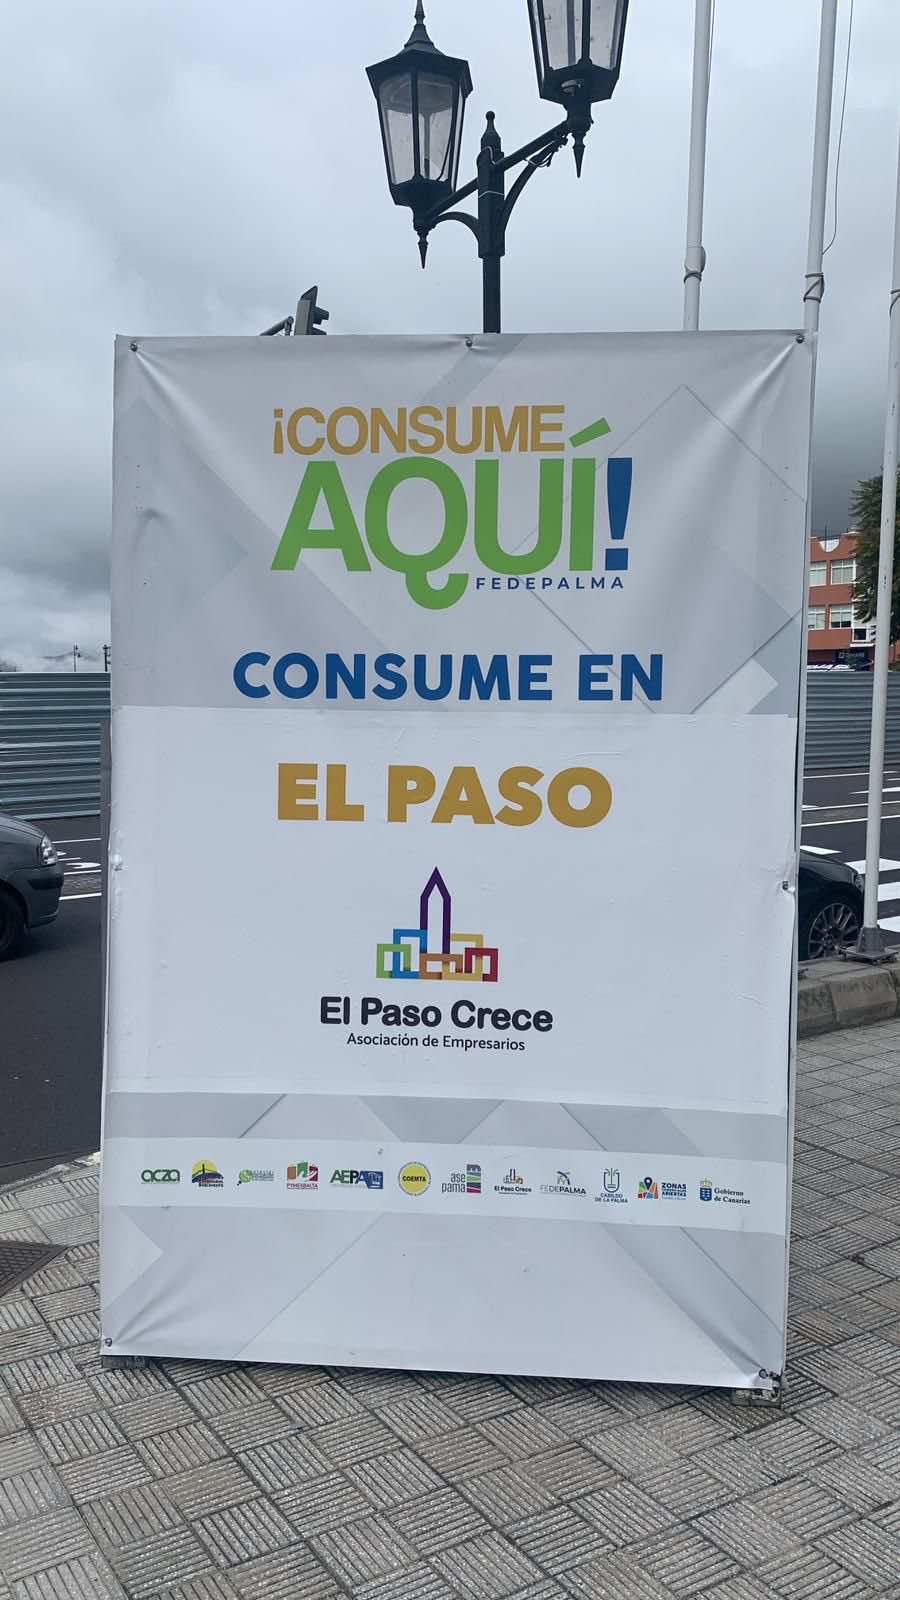 La campaña “Consume Aquí” de FEDEPALMA llega a El Paso